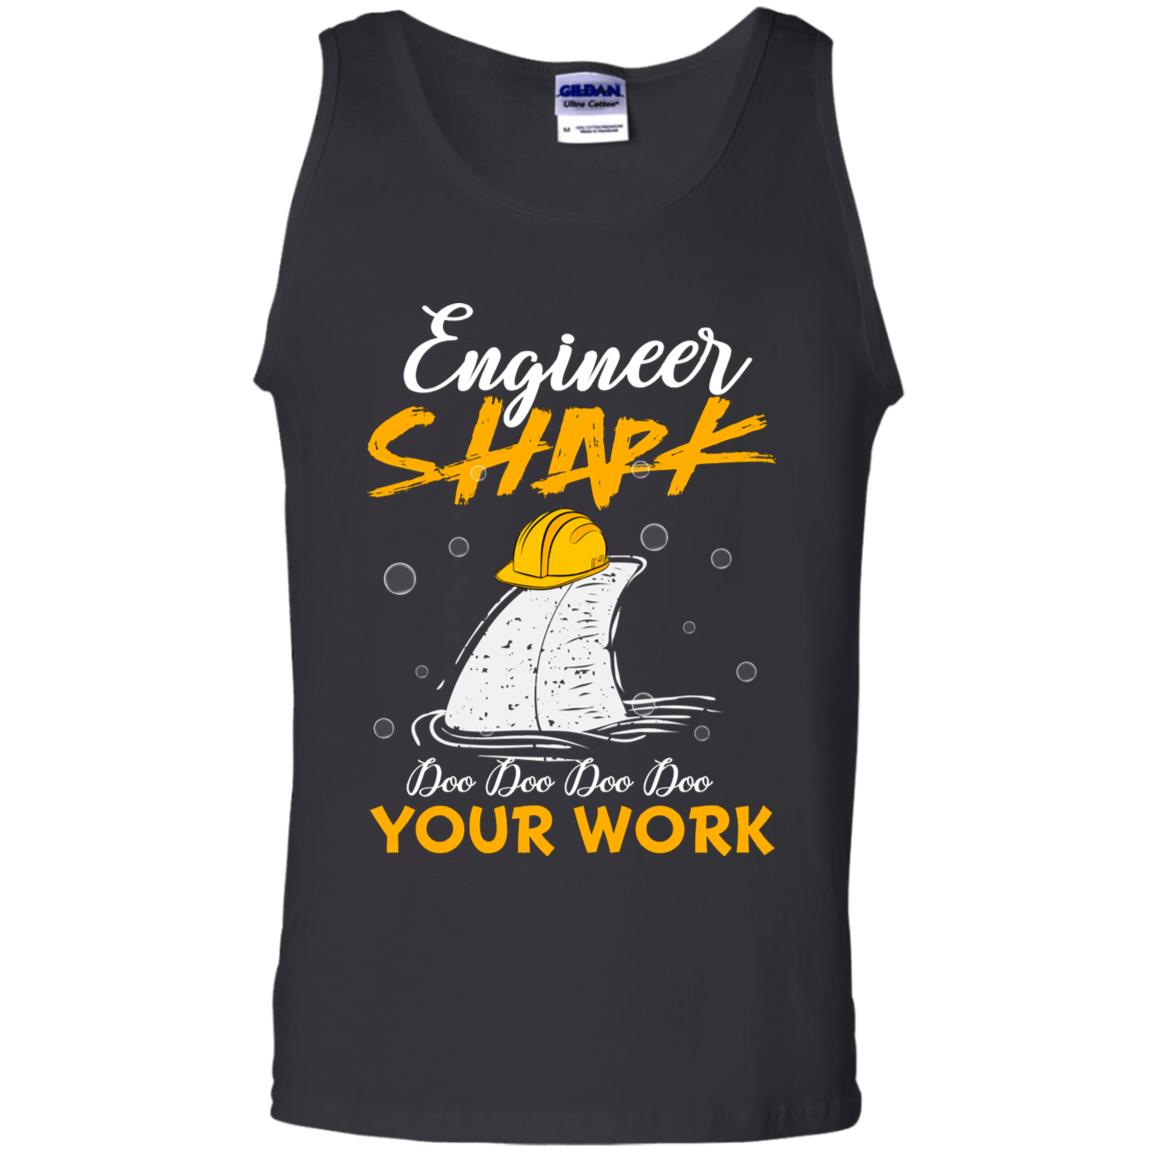 Engineer Shark Doo Doo Doo Your Work Engineering Shark Gift Shirt For Mens Or WomensG220 Gildan 100% Cotton Tank Top